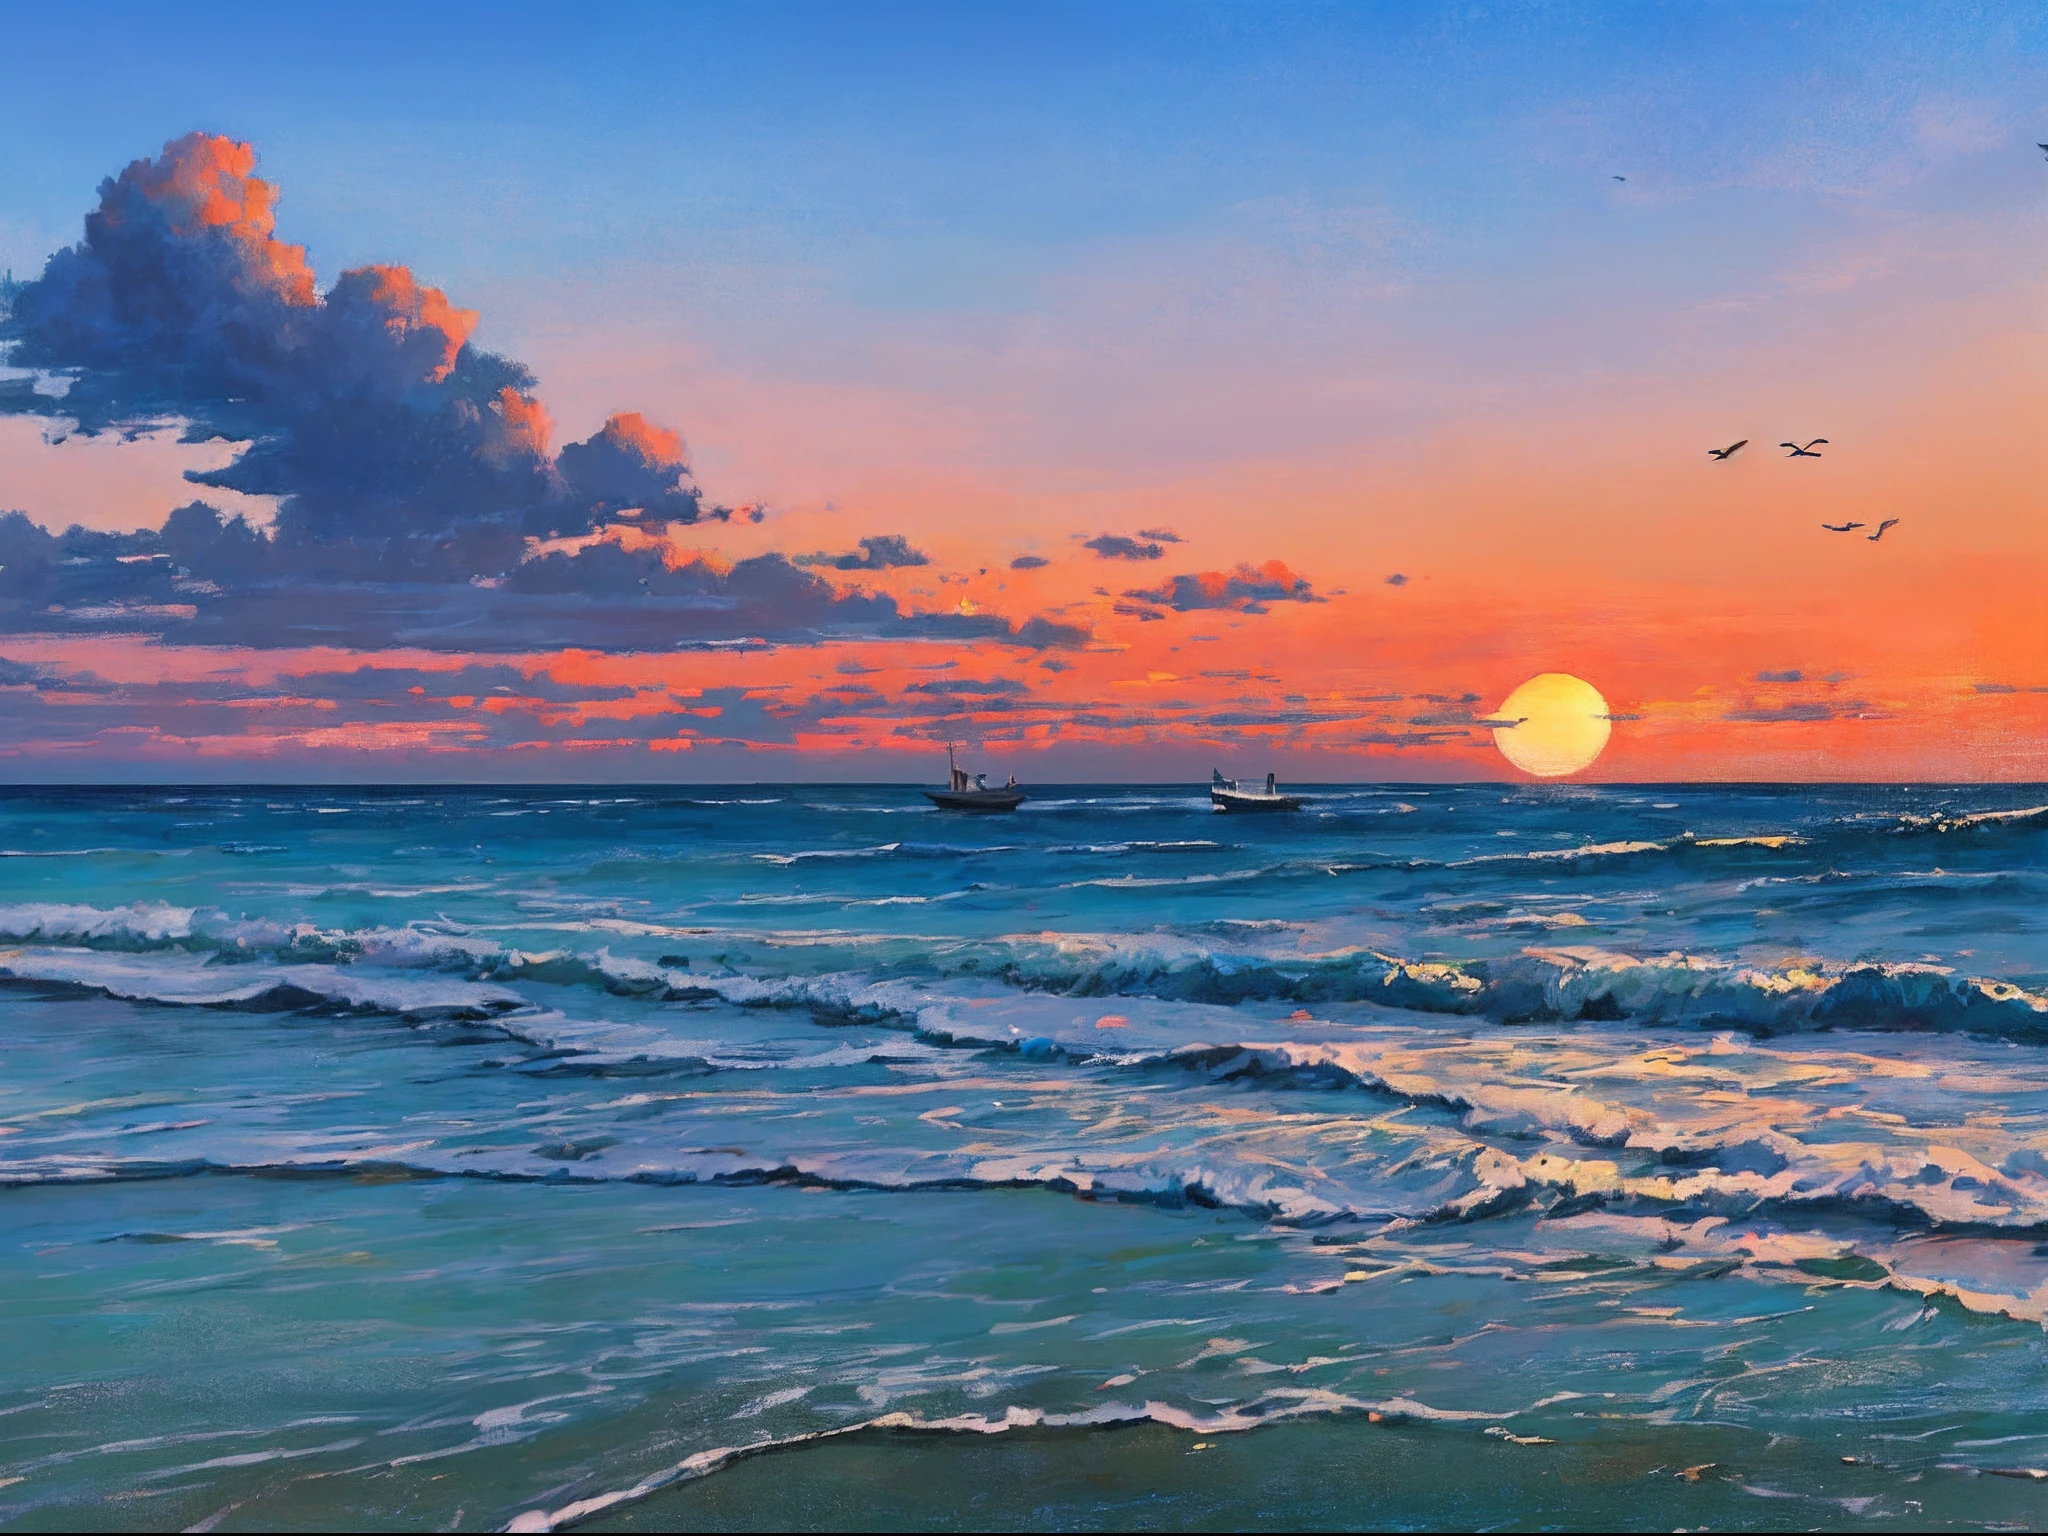 "Impresionante pintura al óleo de un paisaje playero con un tranquilo amanecer, olas suaves, un barco lejano, una pintoresca torre de vigilancia, Nubes, y elegantes siluetas de pájaros volando en el cielo."